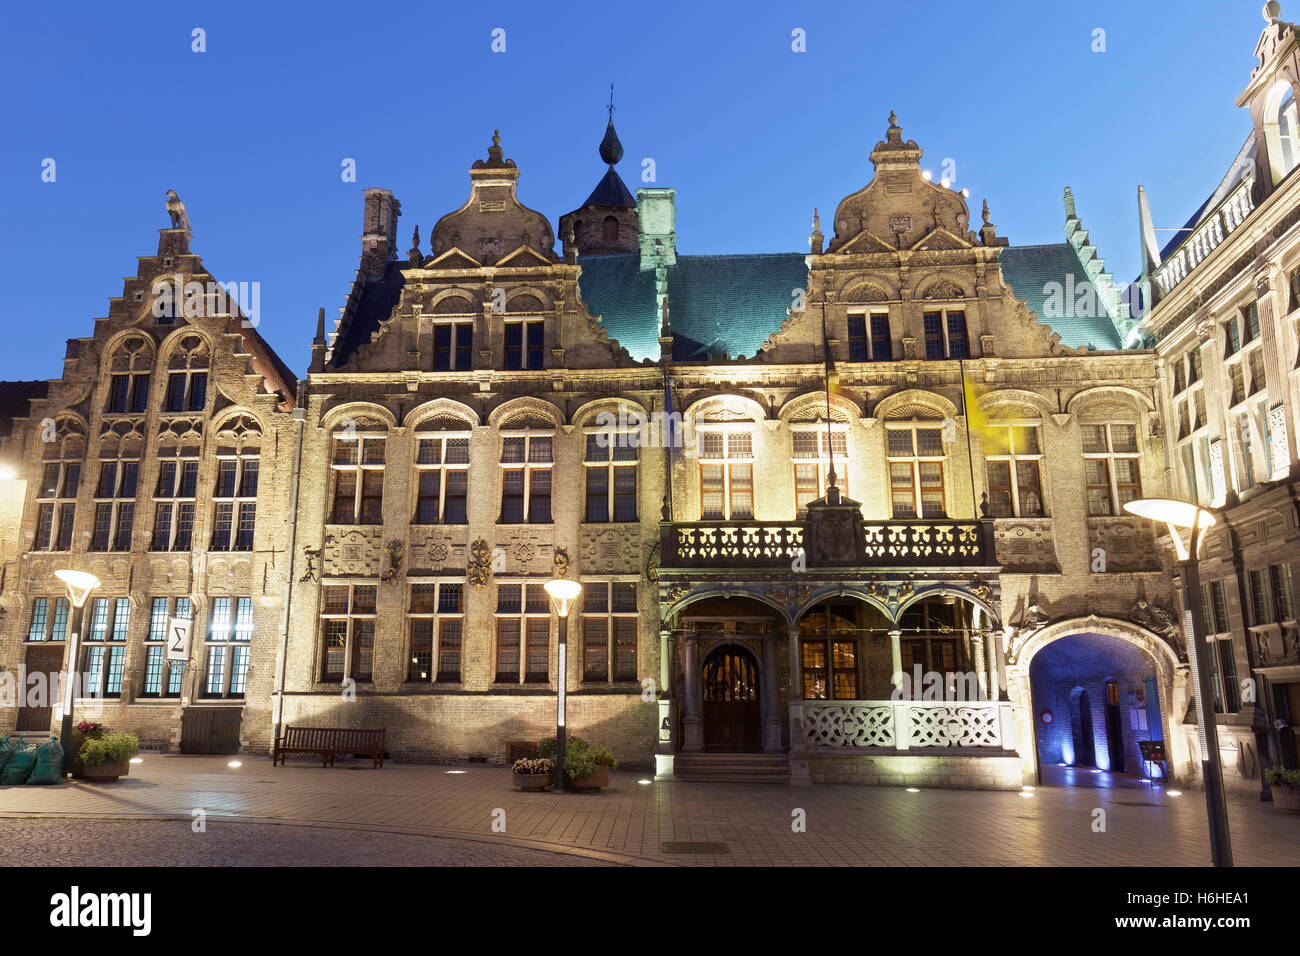 Hôtel de ville avec loggia Renaissance, crépuscule, Veurne, Flandre occidentale, Flandre orientale, Belgique Banque D'Images